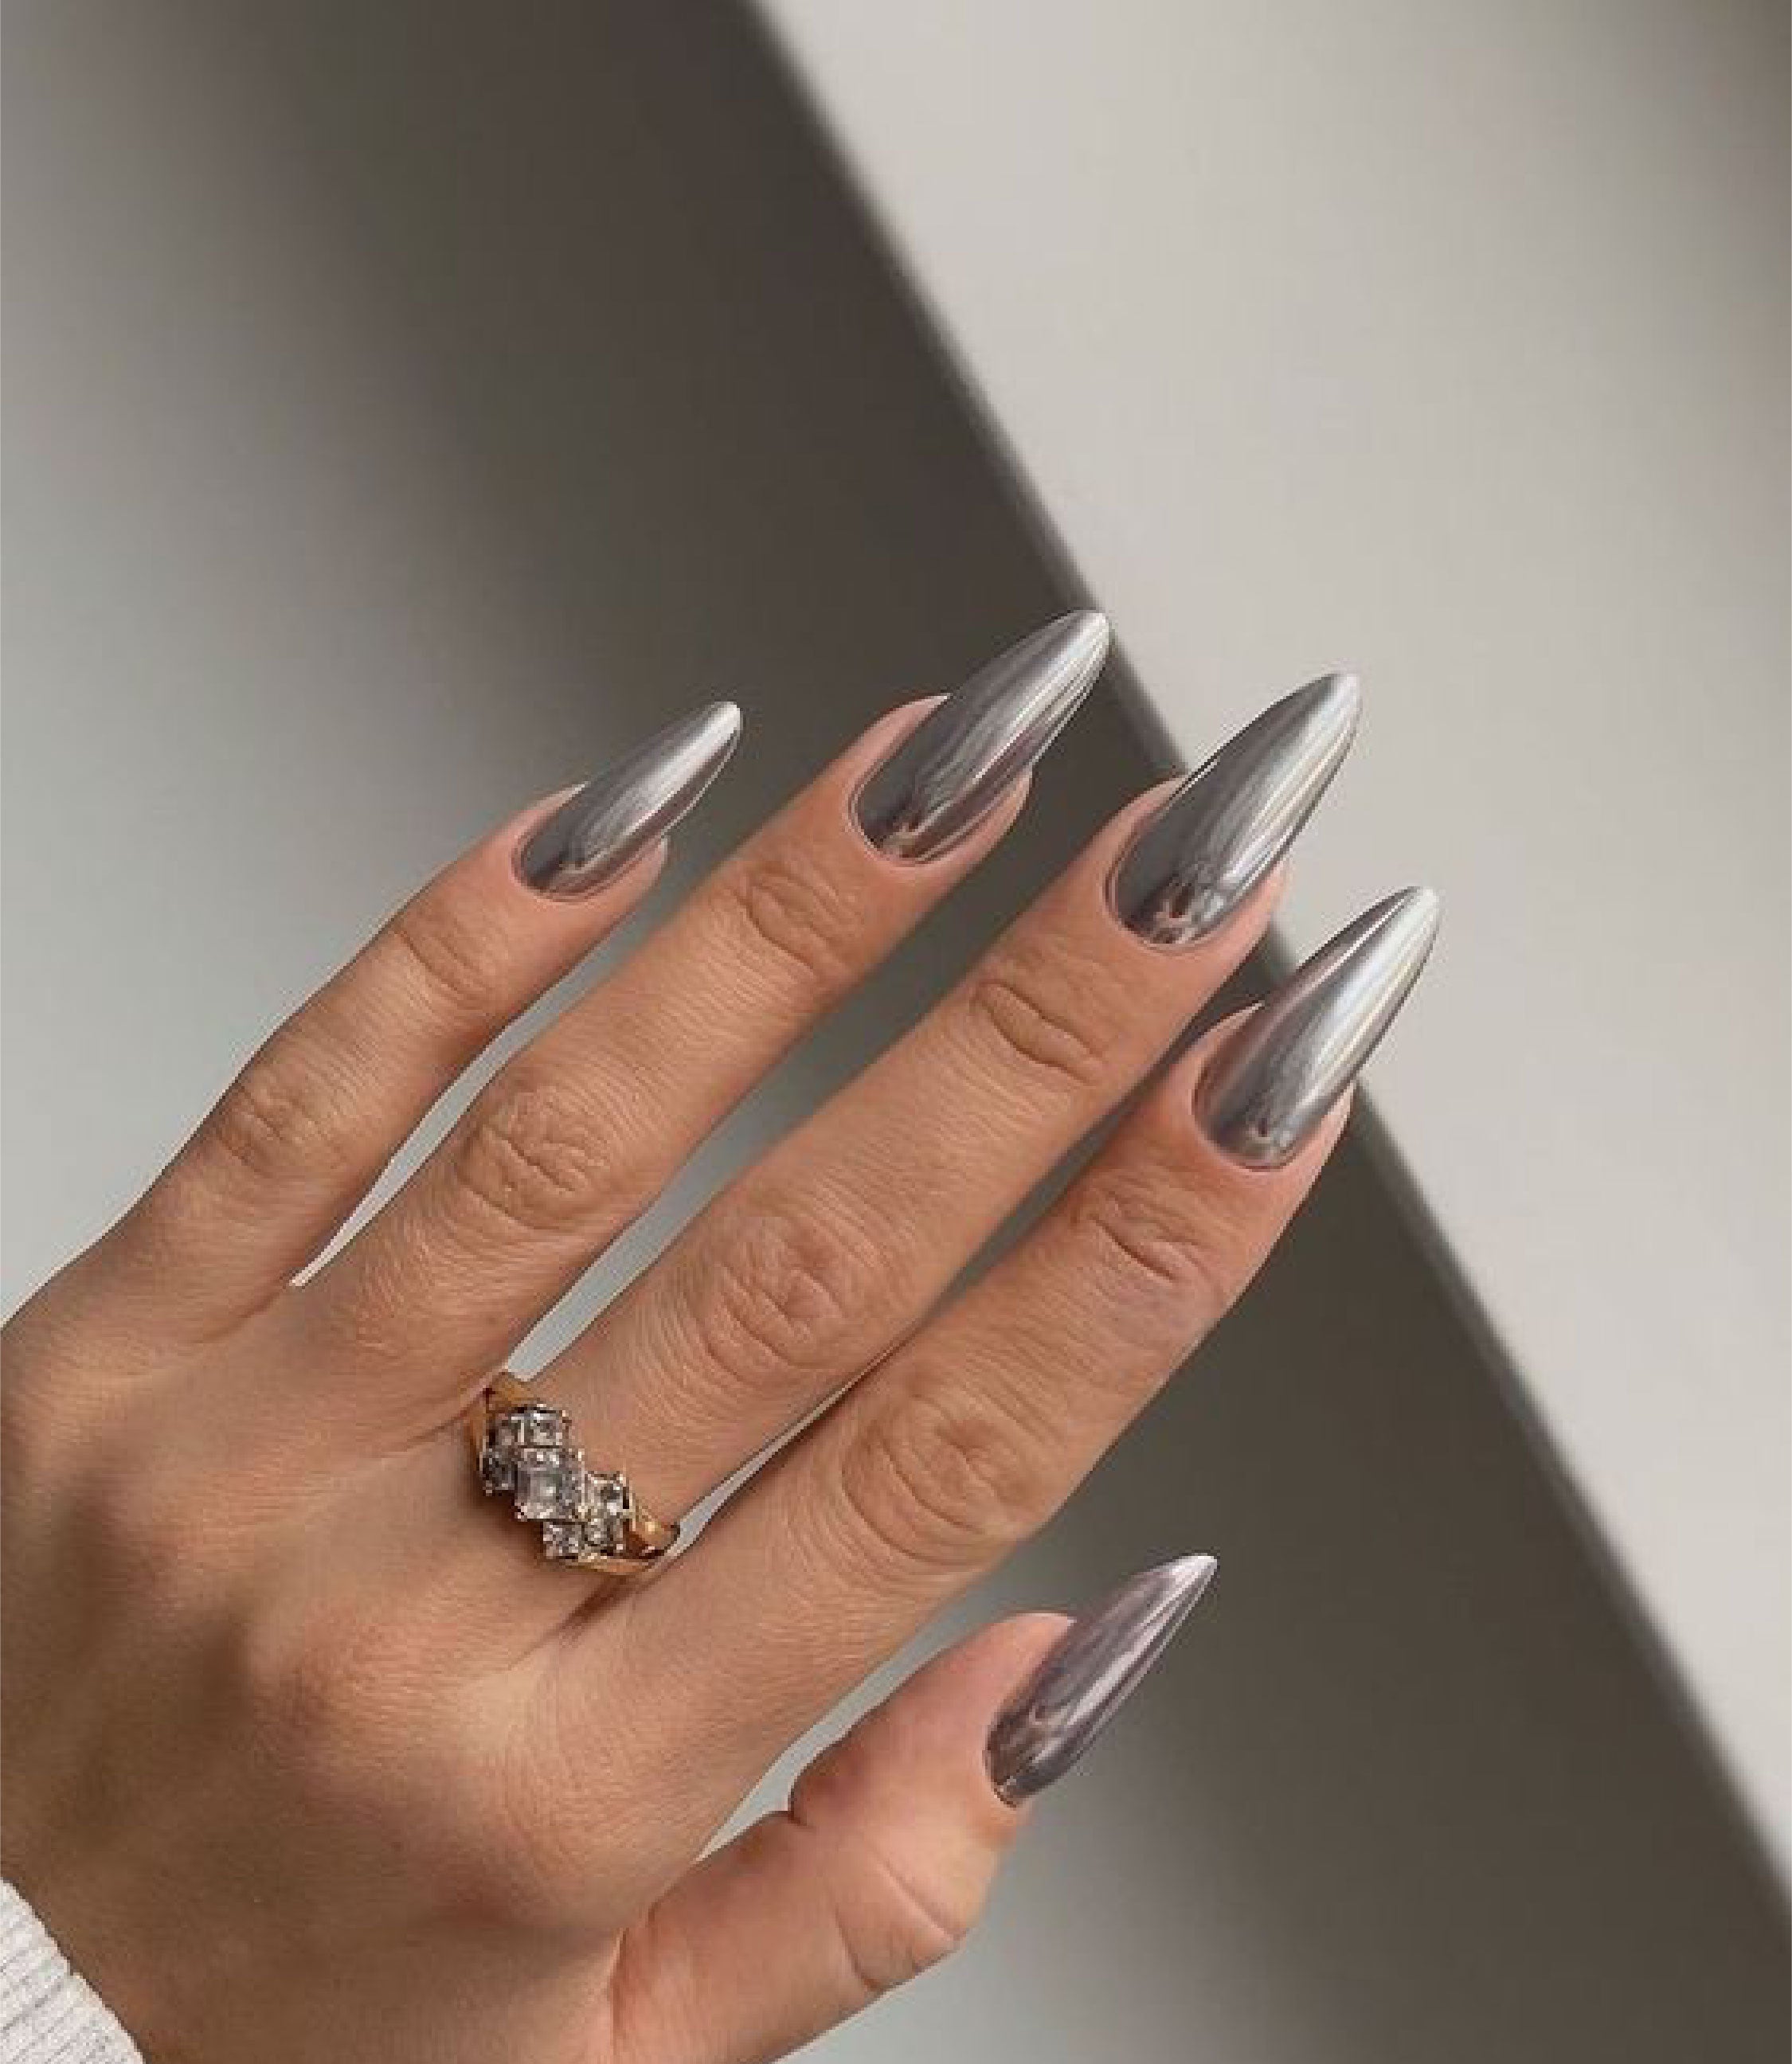 Diseño de uñas metálicas